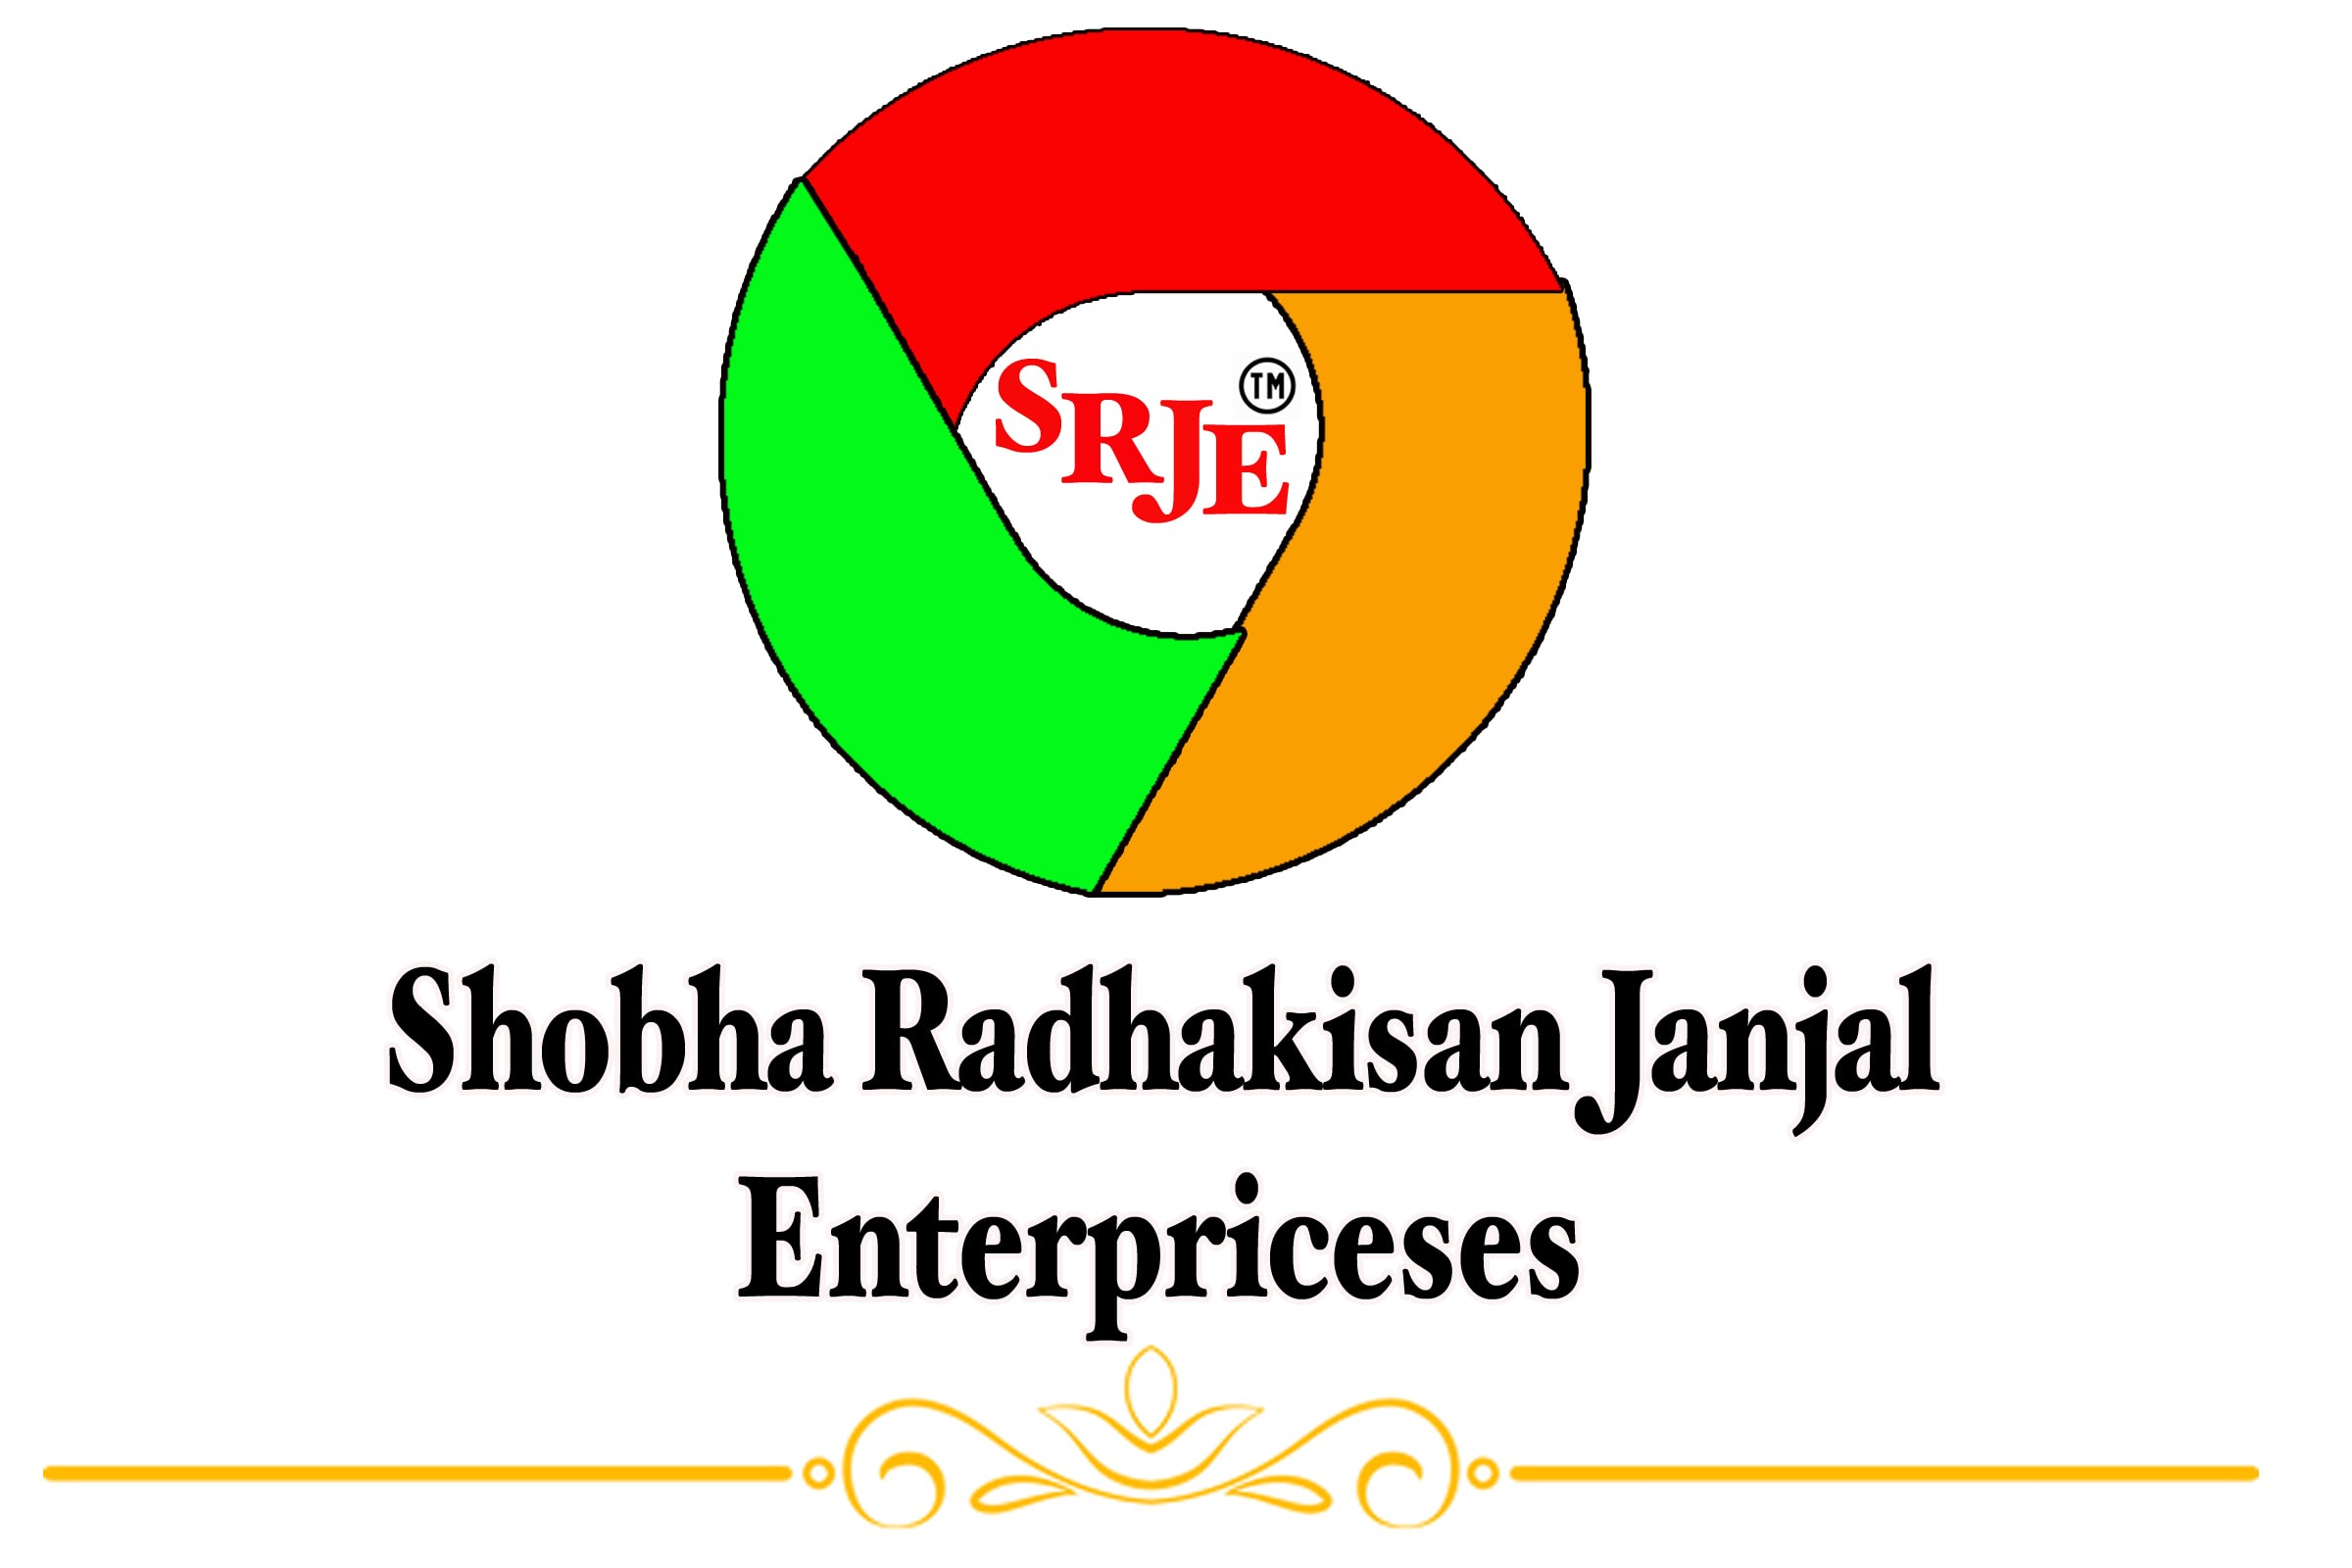 Shobha Radhakisan Janjal Enterprise